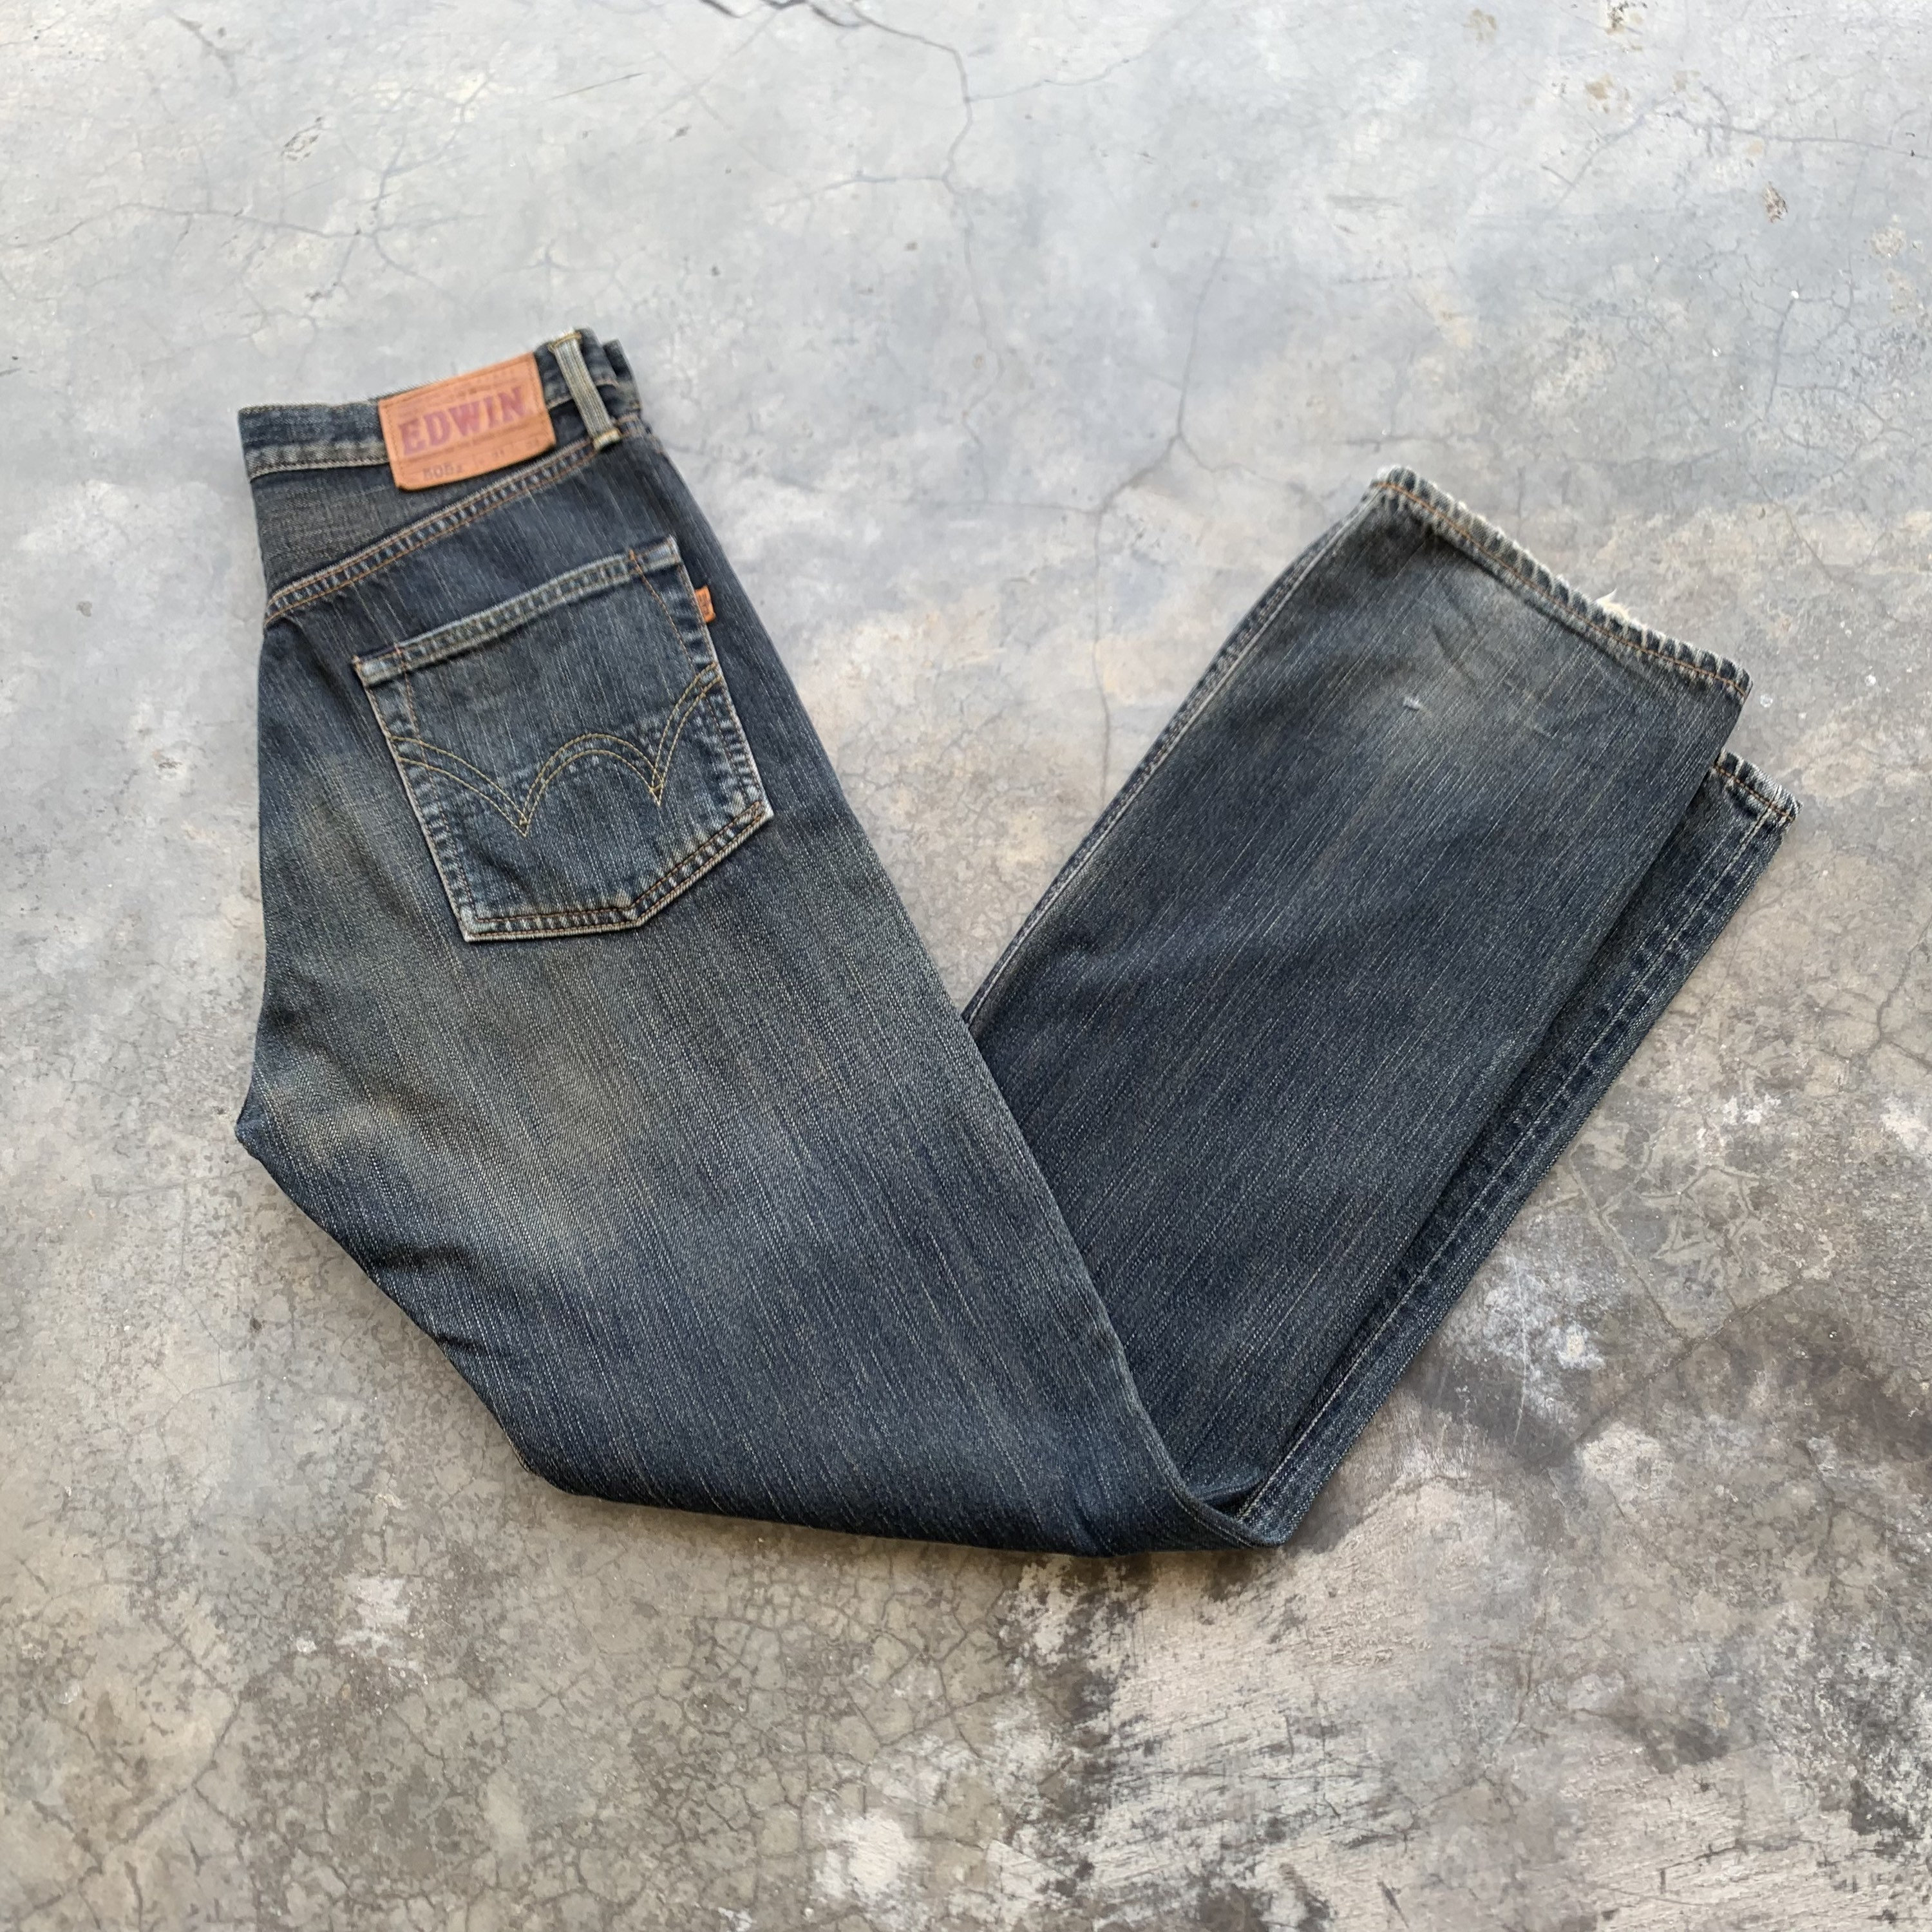 Denim S&G Mens Slim Jeans Black take 30% Off Price – Seaweed & Gravel